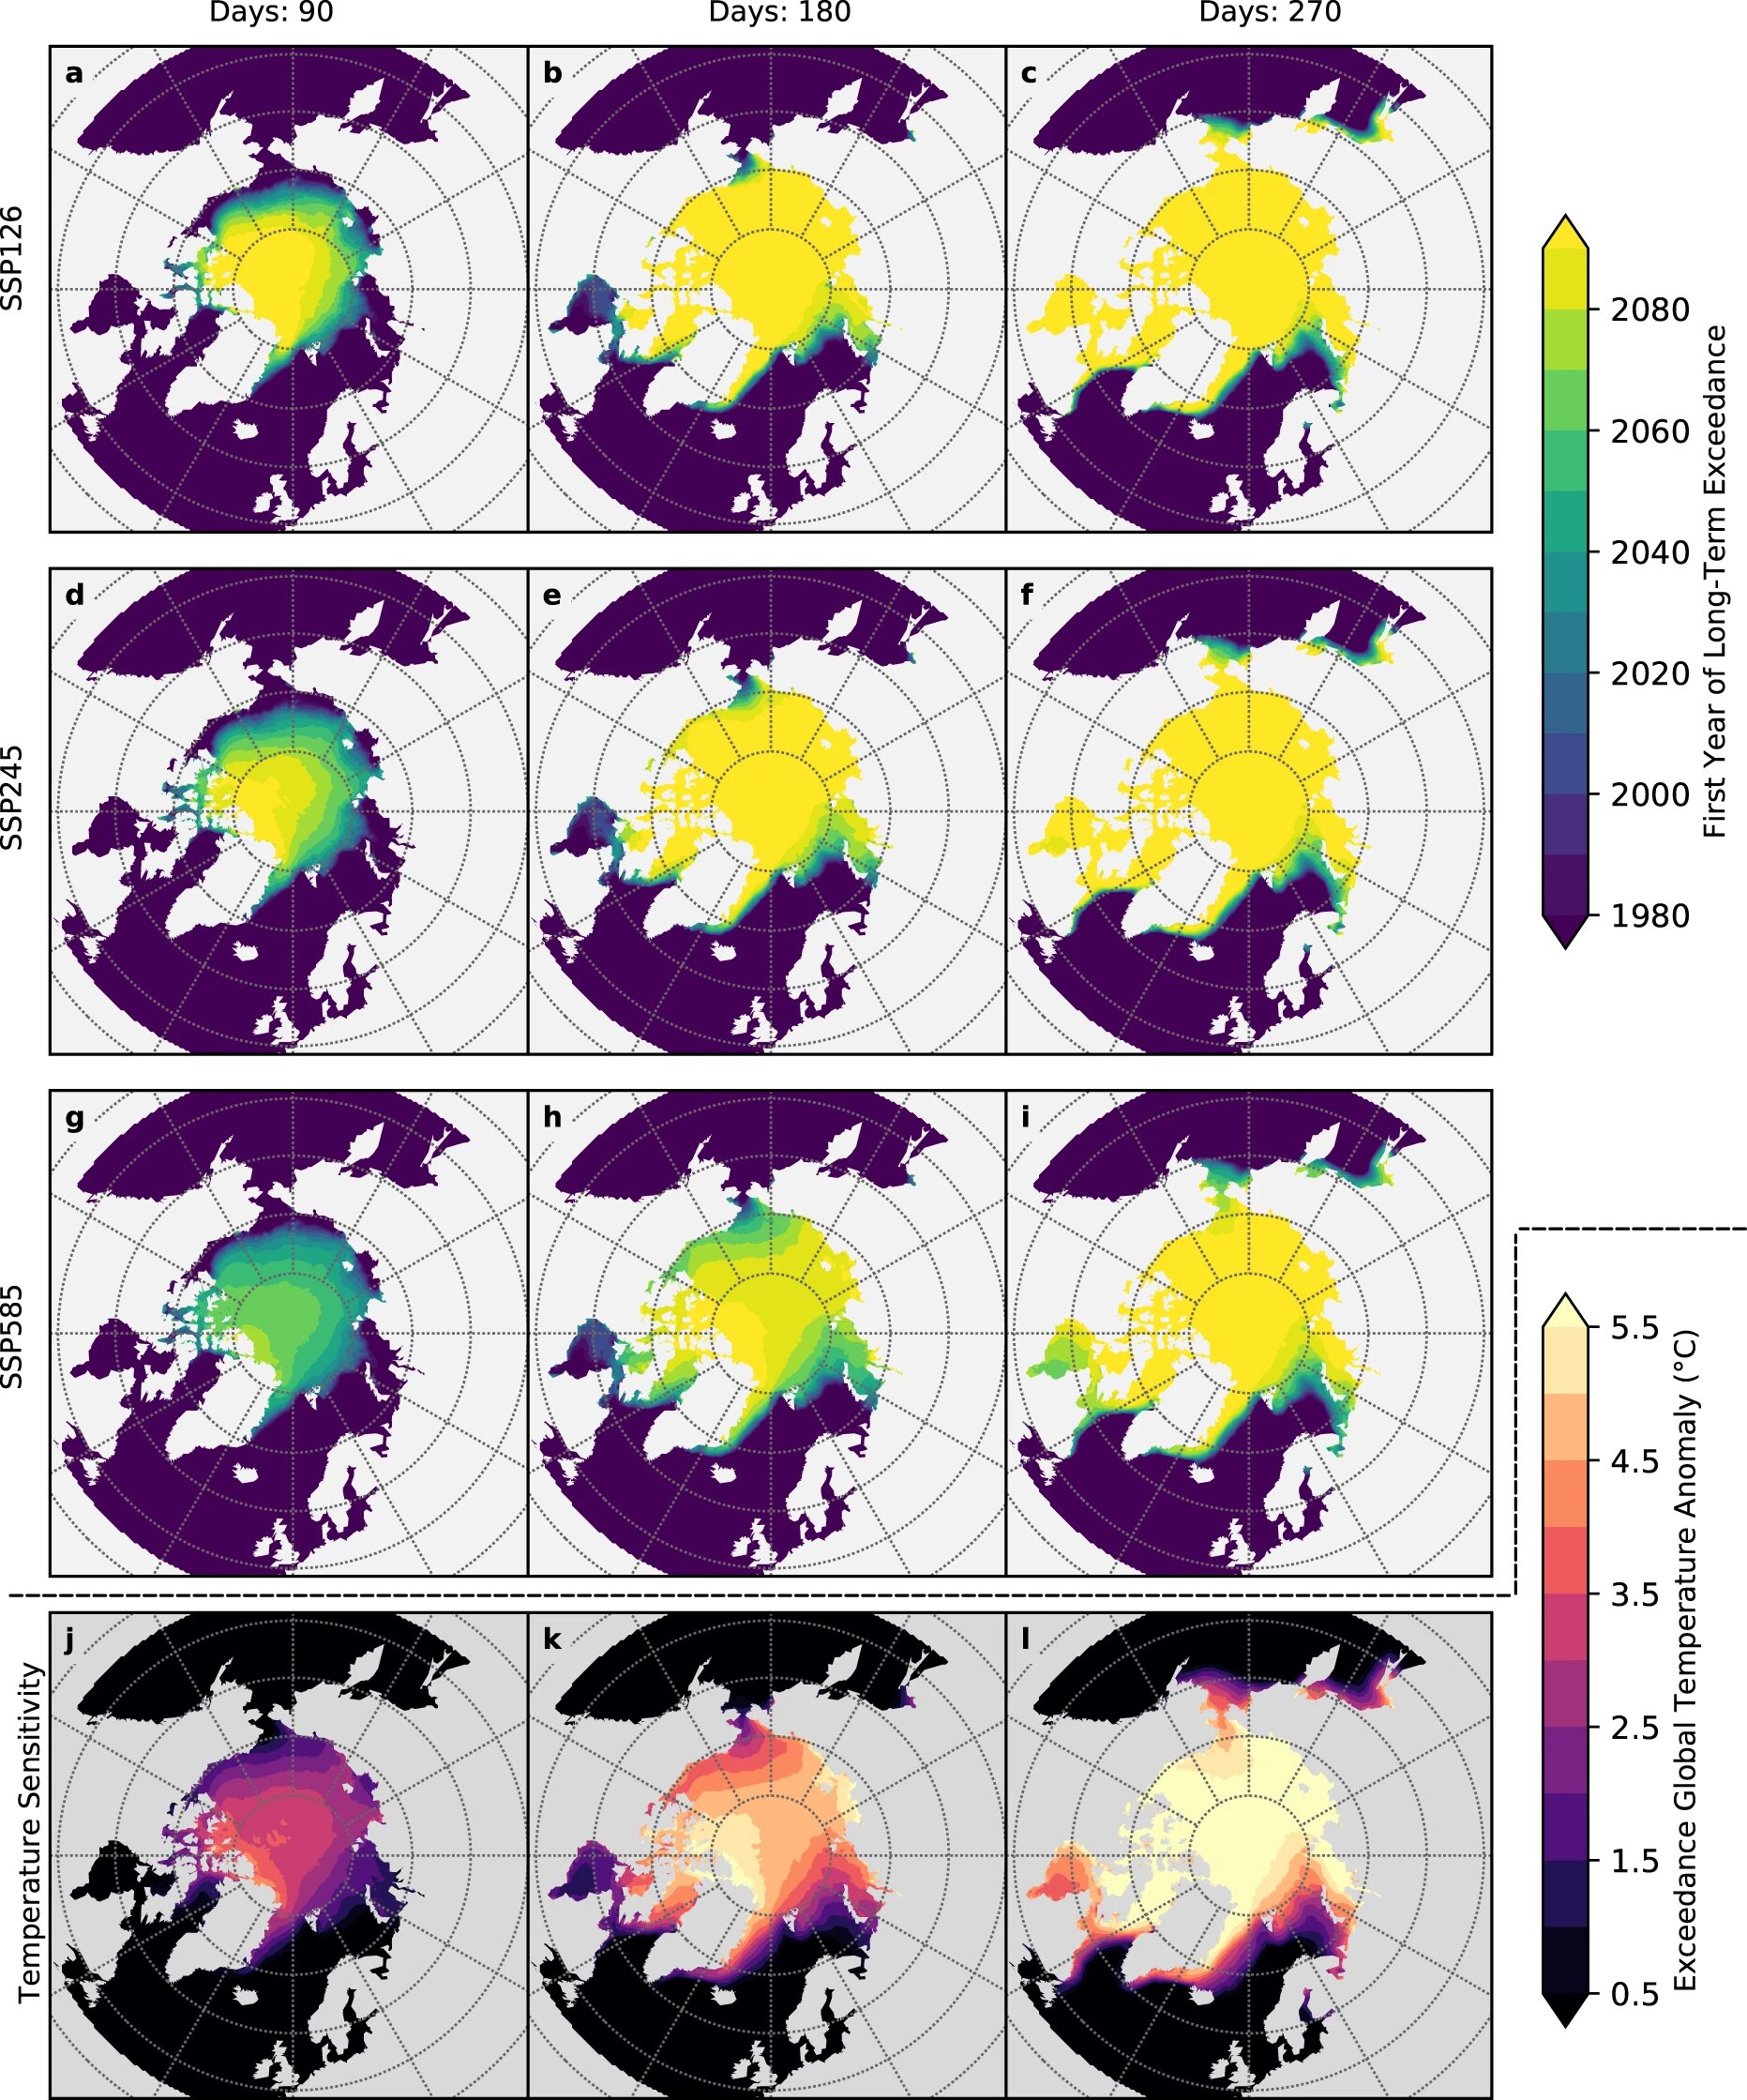 Роки (a–i) та аномалії глобальної температури (j–l), за яких періоди відкритої води у прогнозах перевищують 80 днів (зліва), 180 днів (по центру) та 270 днів (справа). Alex Crawford et al.